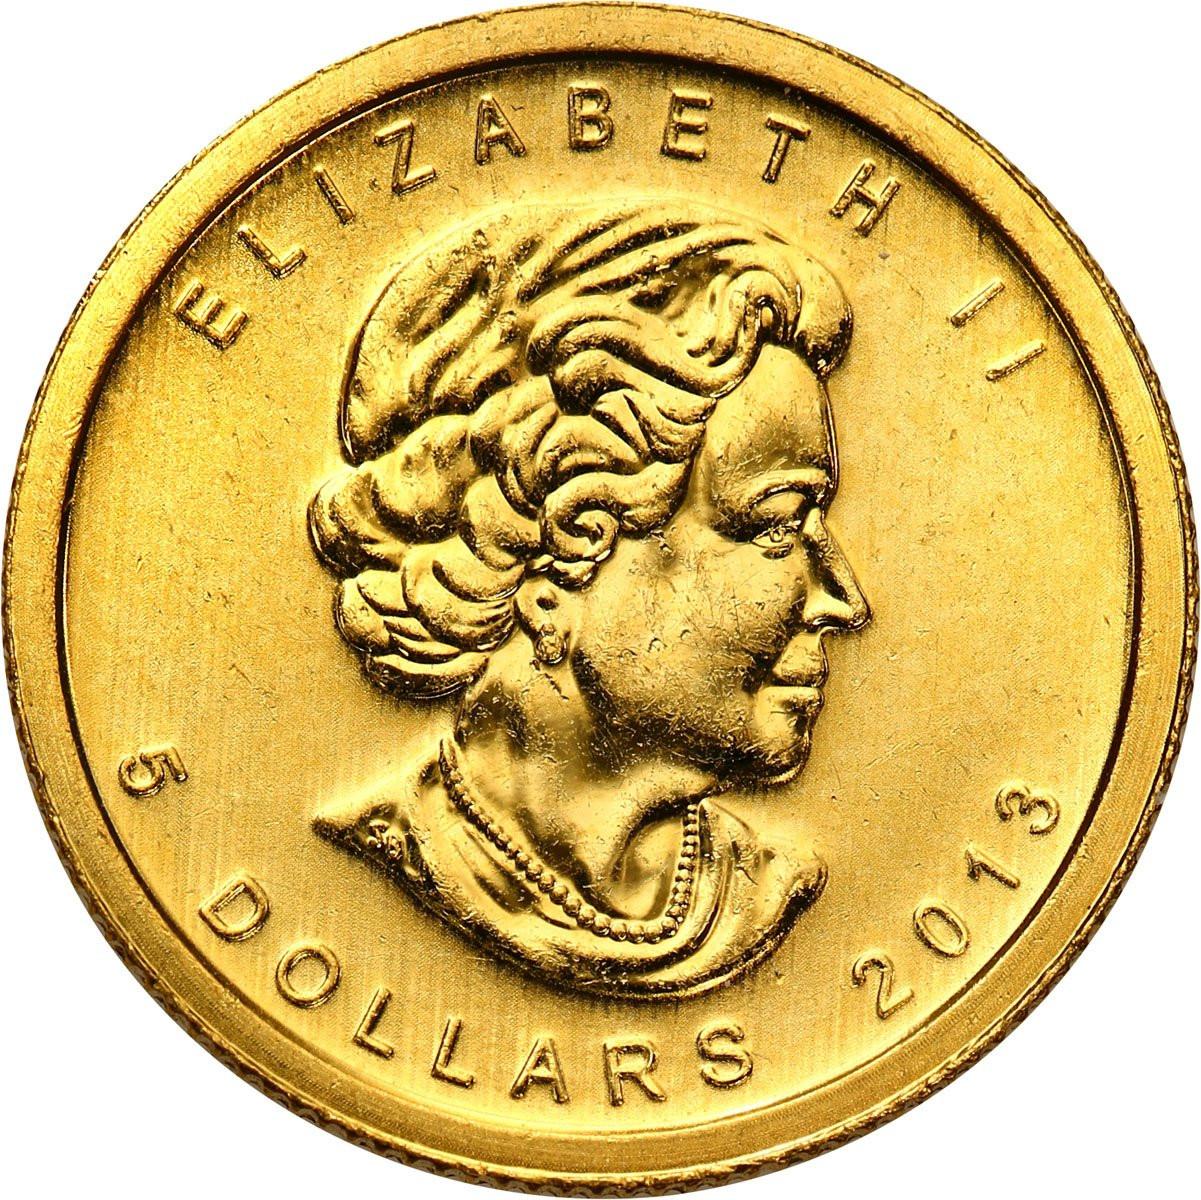 Kanada 5 dolarów 2013 liść klonowy 1/10 uncji złota